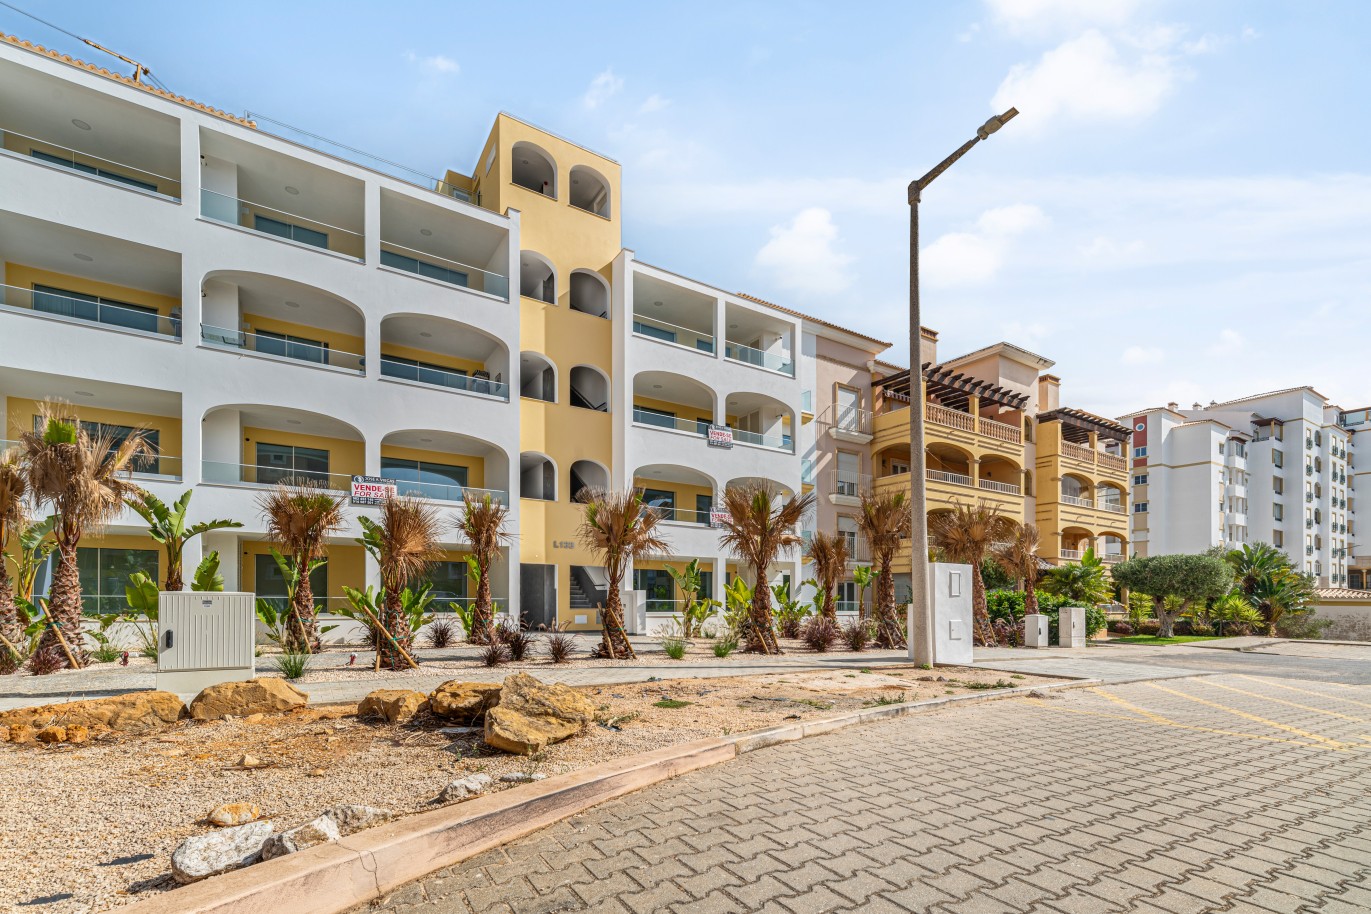 Verkauf einer Wohnung, mit Terrasse, Lagos, Algarve, Portugal_238092